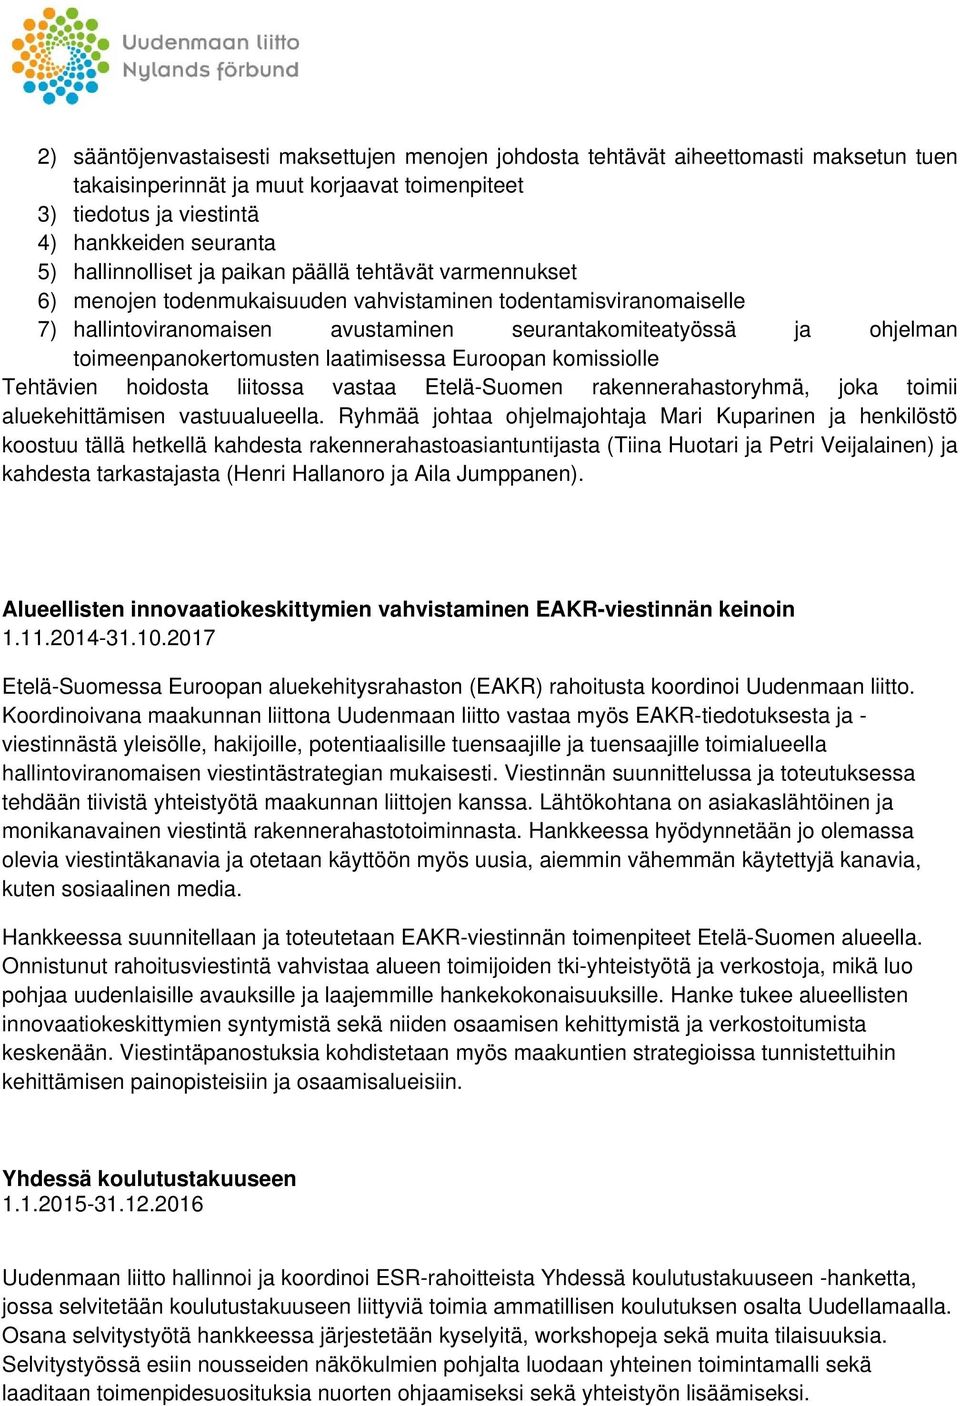 toimeenpanokertomusten laatimisessa Euroopan komissiolle Tehtävien hoidosta liitossa vastaa Etelä-Suomen rakennerahastoryhmä, joka toimii aluekehittämisen vastuualueella.